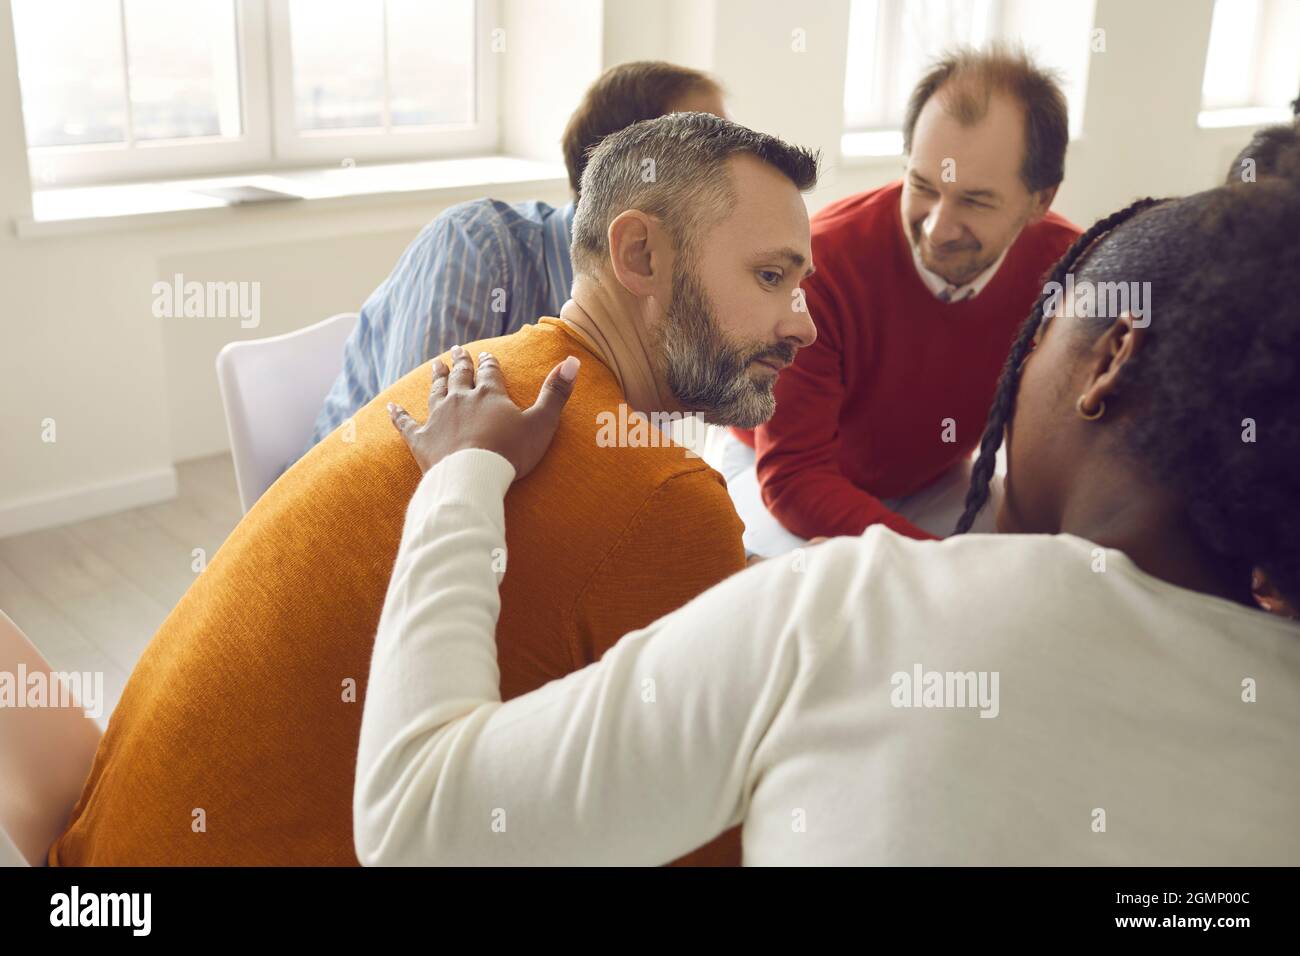 Diverses personnes communiquent et se soutiennent mutuellement lors d'une séance de thérapie de groupe Banque D'Images